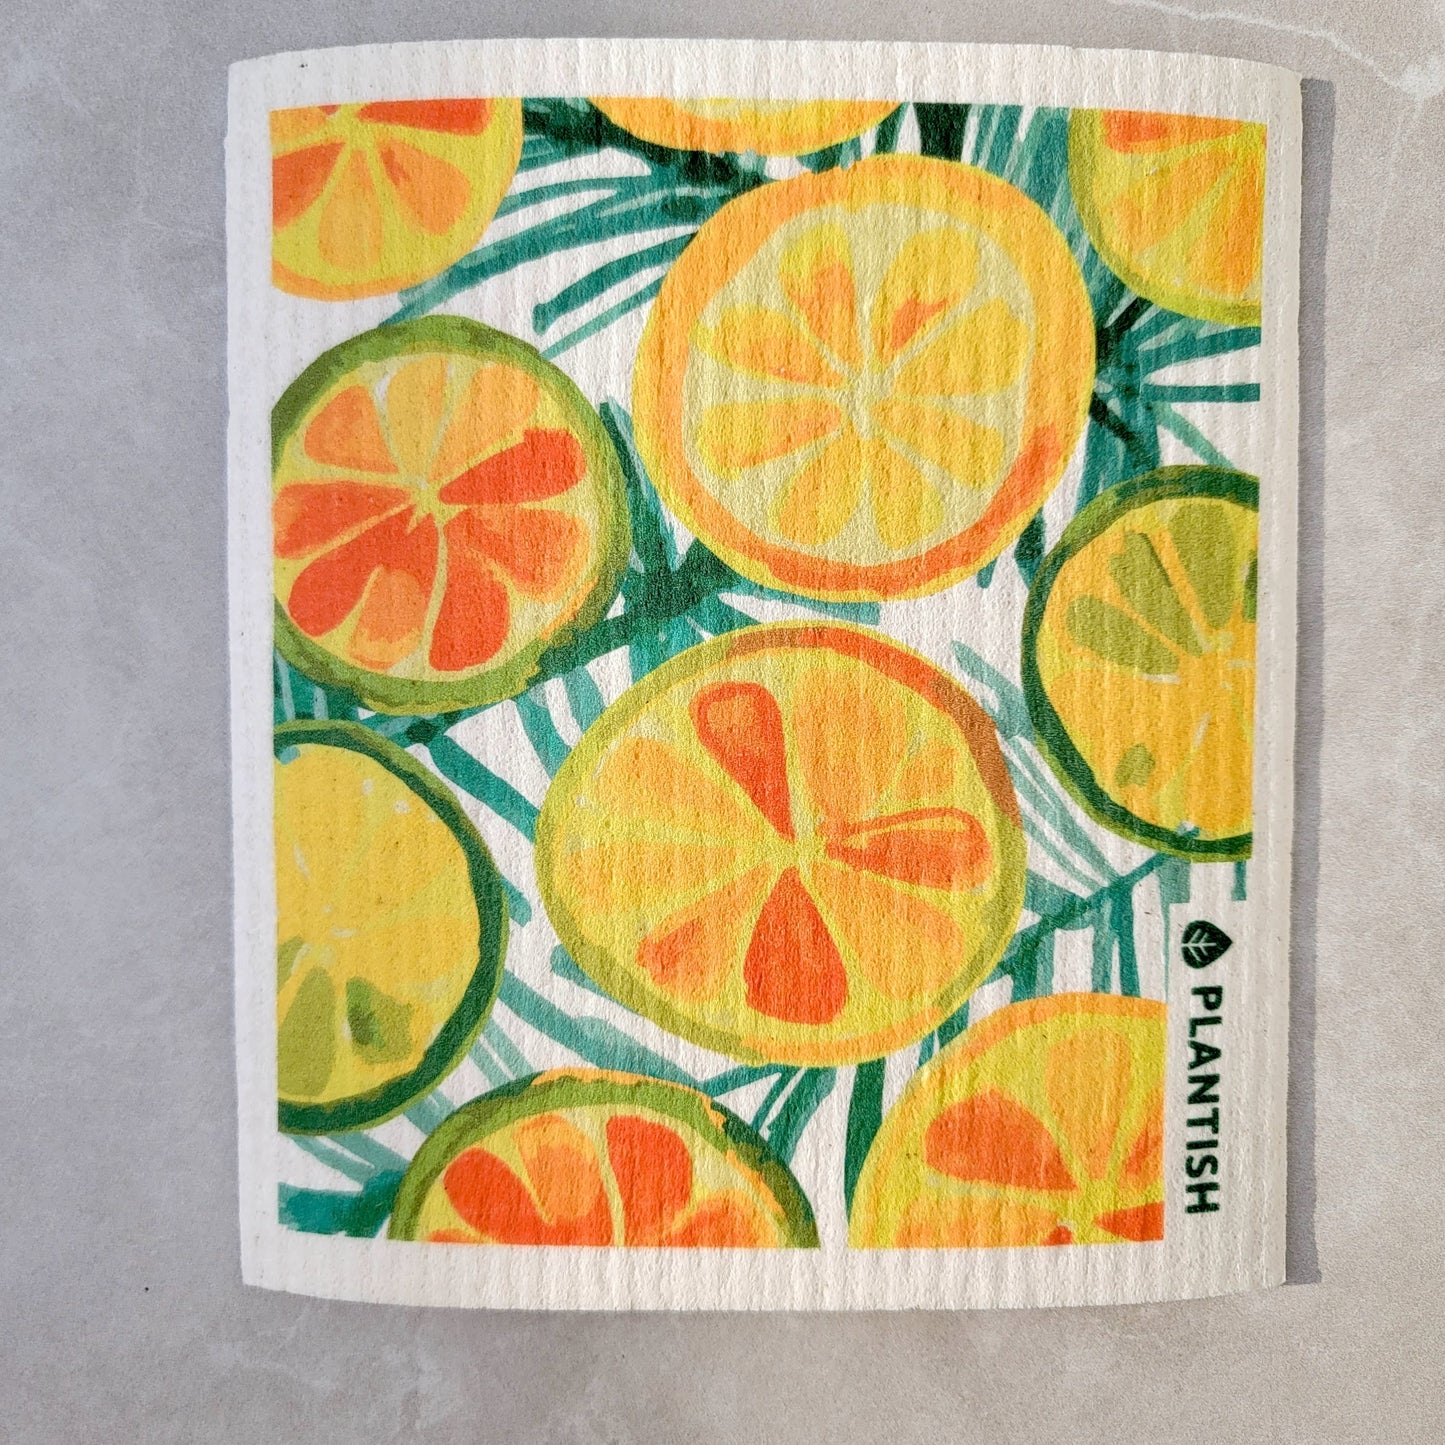 Swedish Dishcloth - Citrus